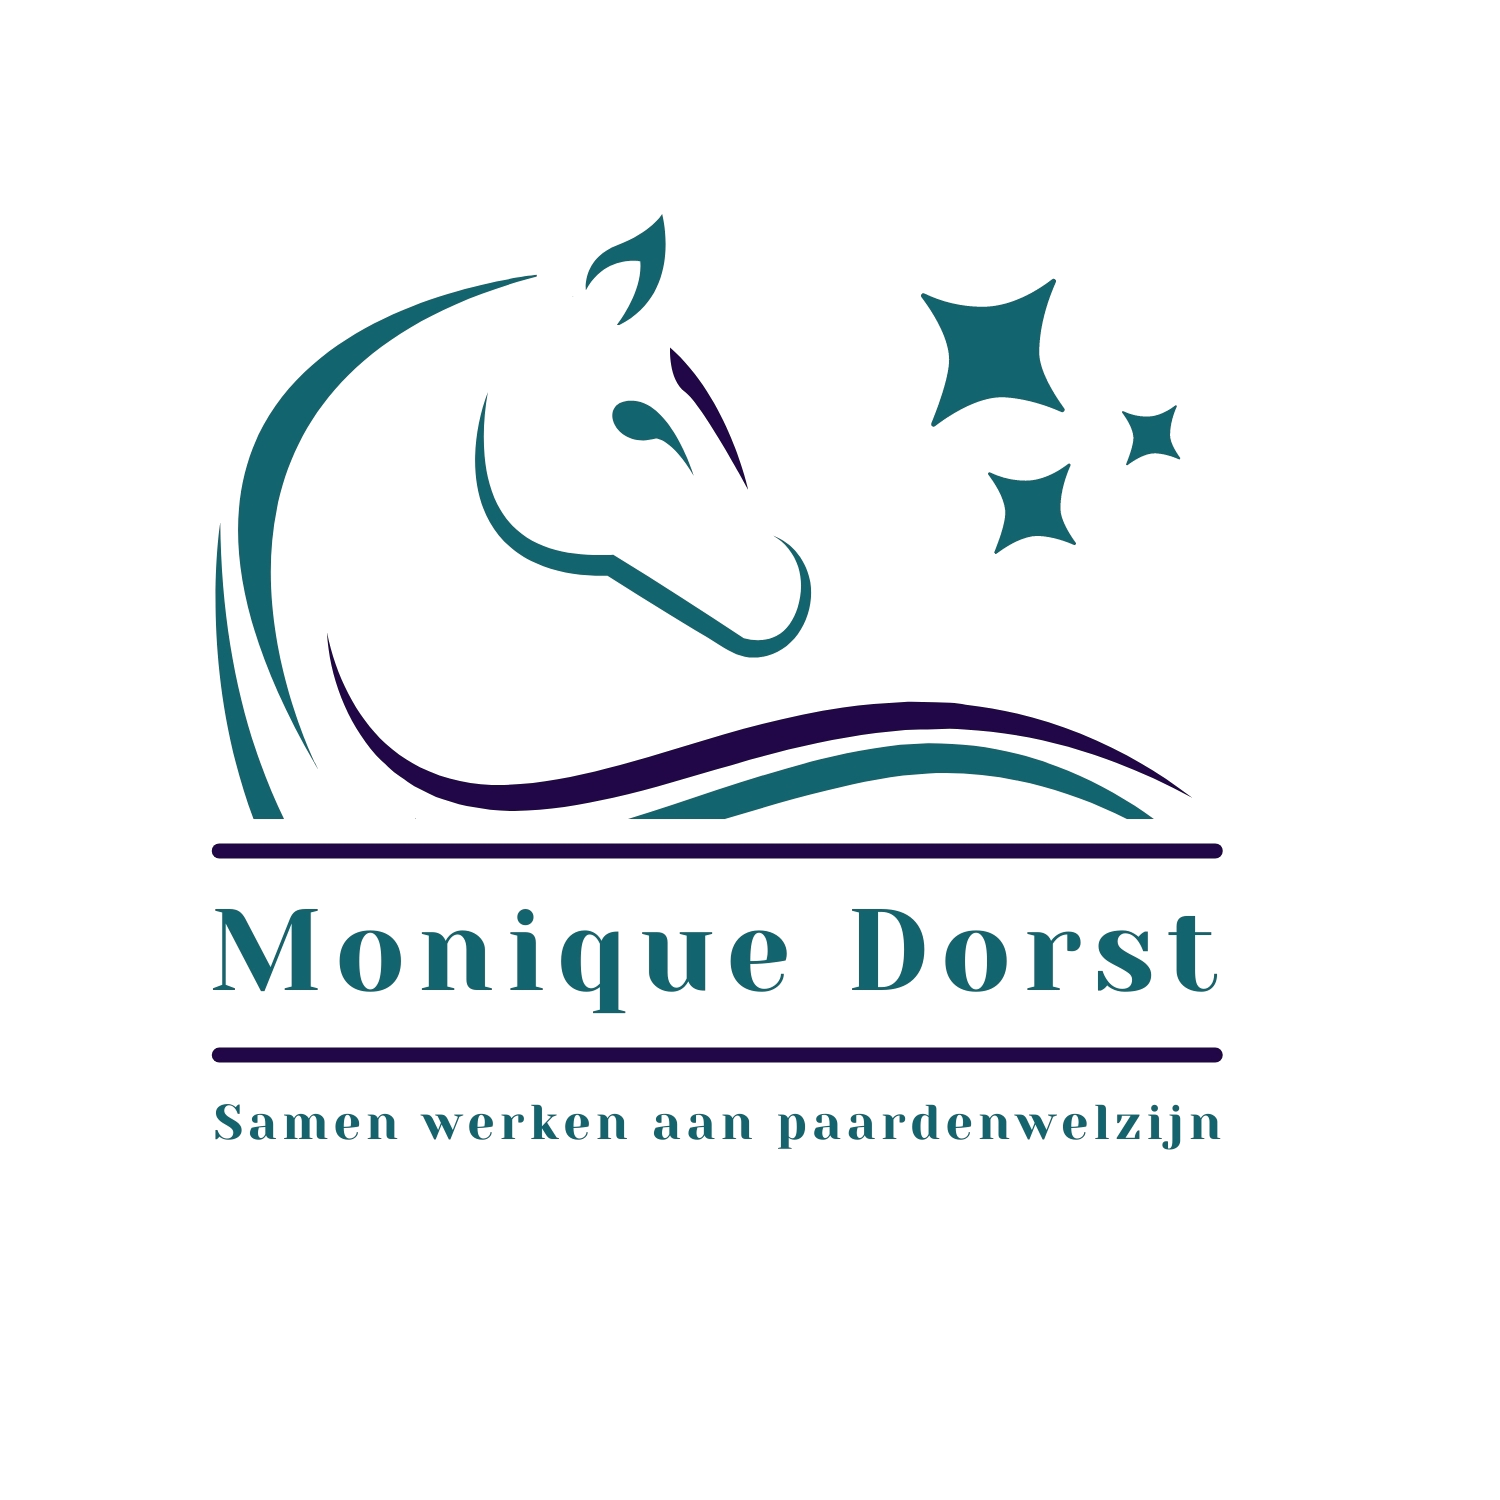 Monique Dorst